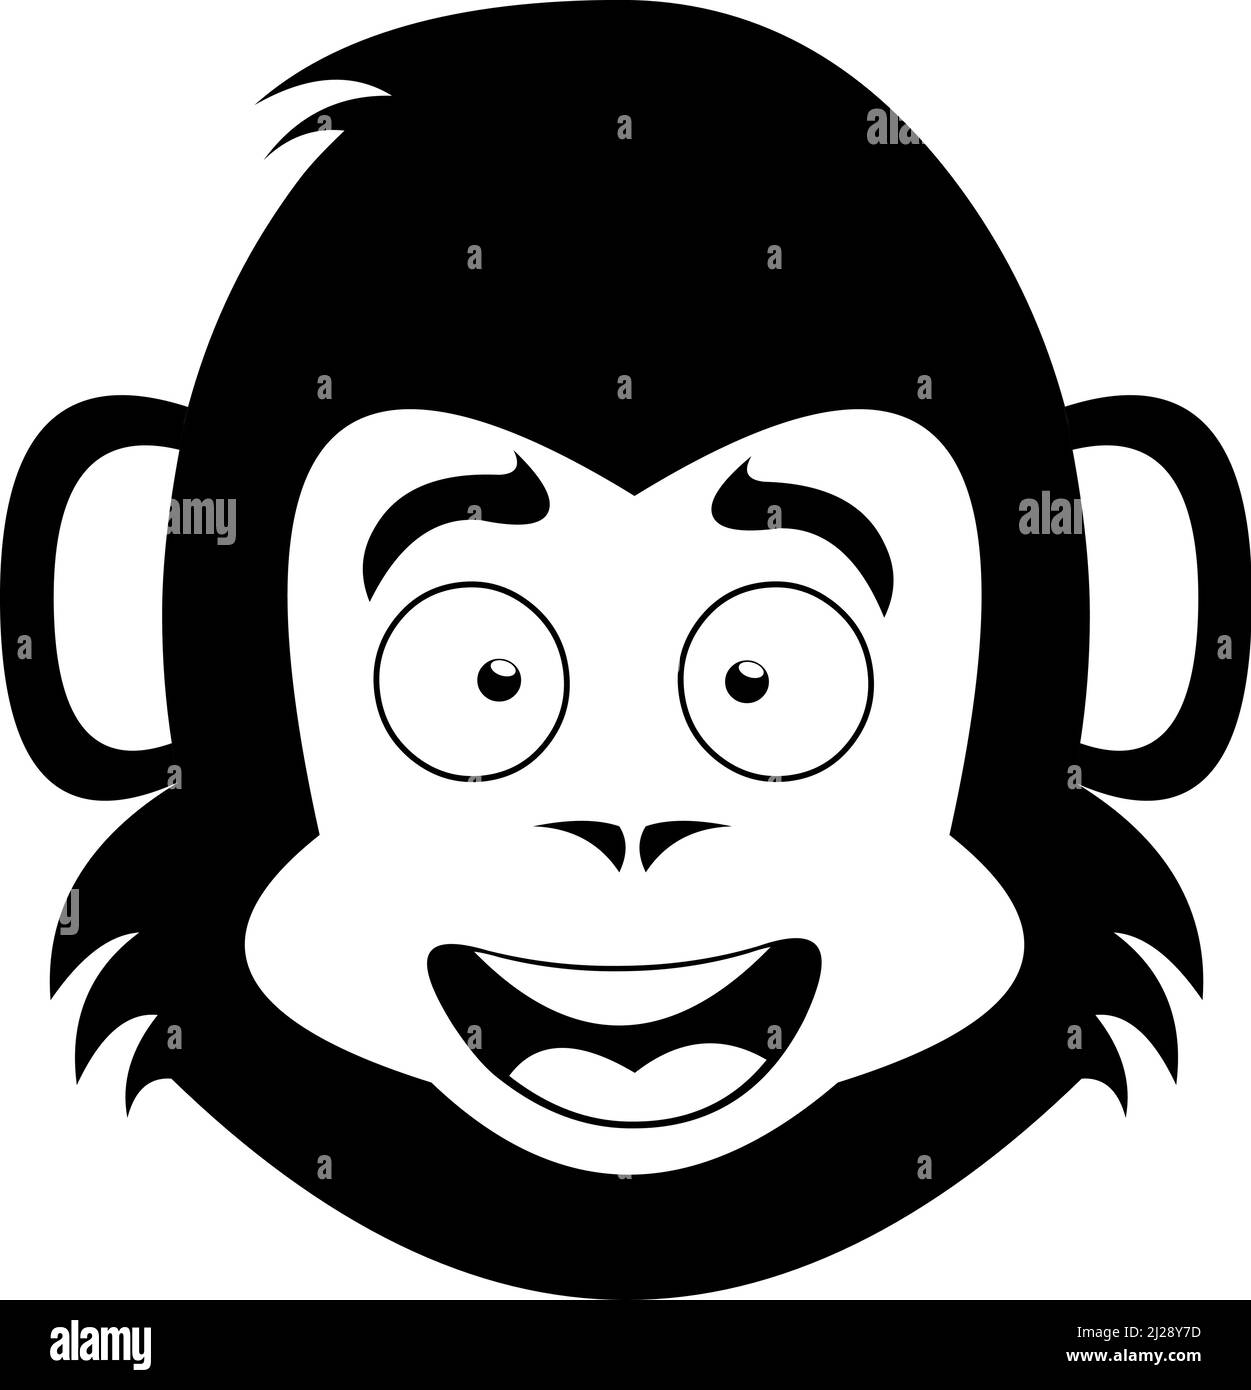 Vektor-Illustration des Gesichts eines Affen oder Gorilla Cartoon in schwarz und weiß gezeichnet Stock Vektor